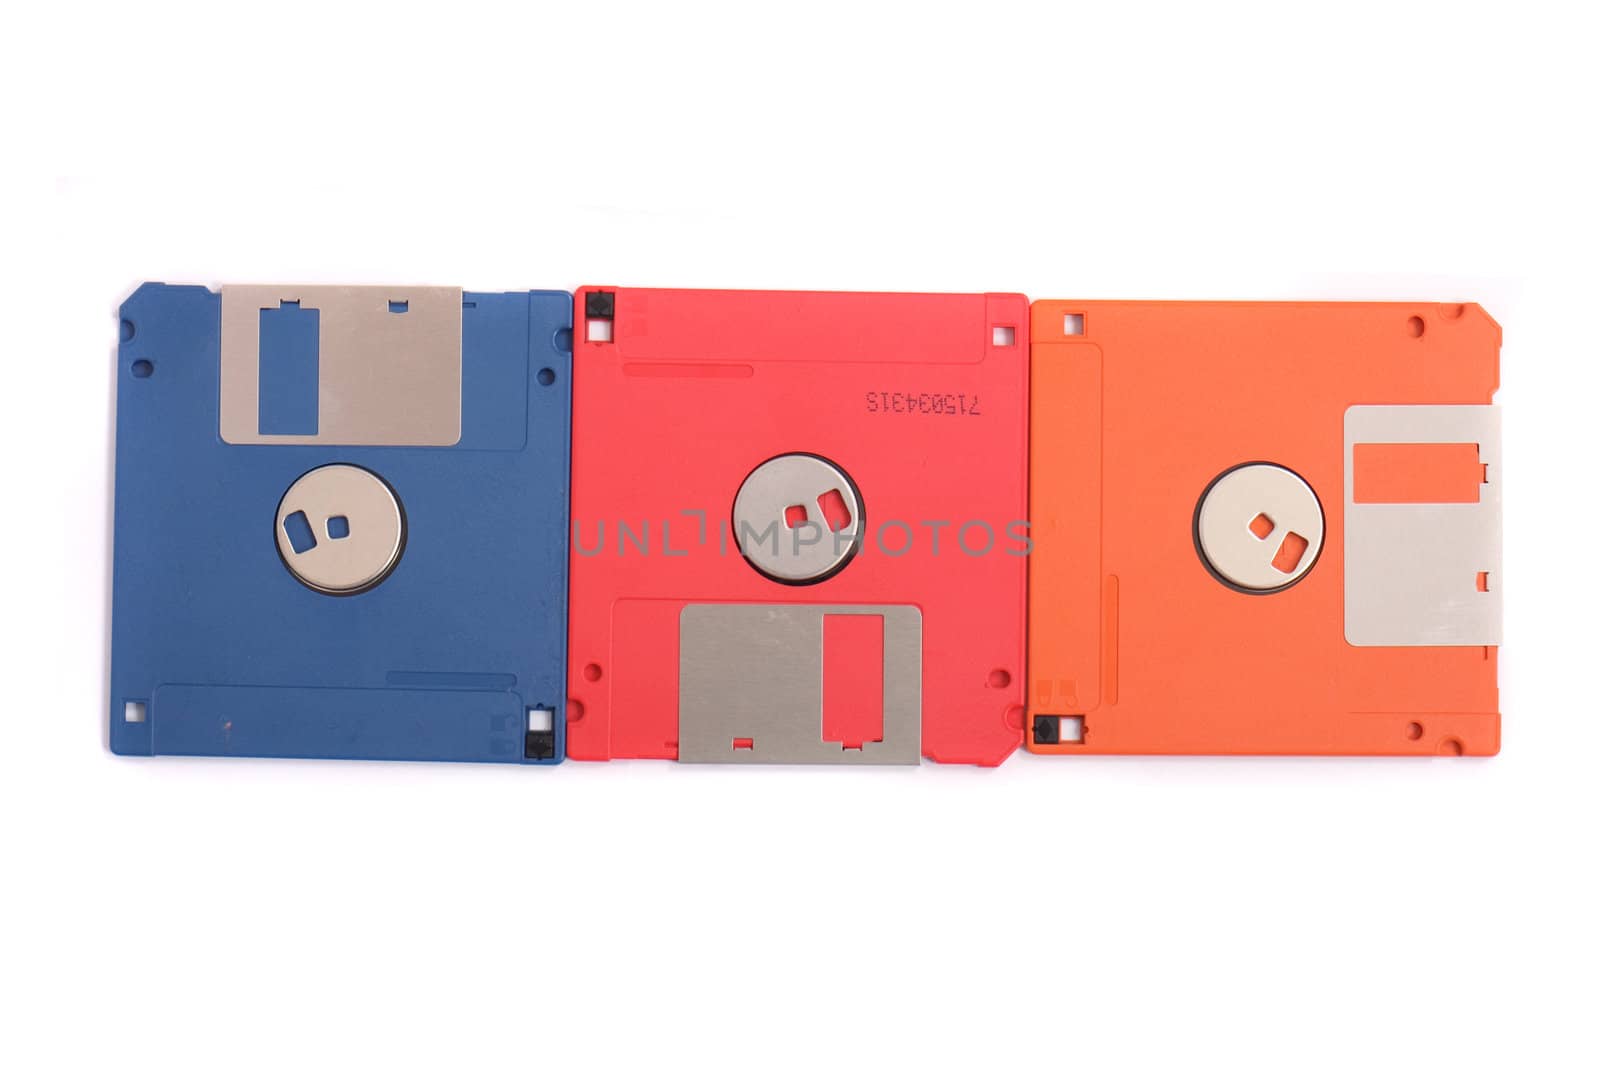 floppy disks by jonnysek